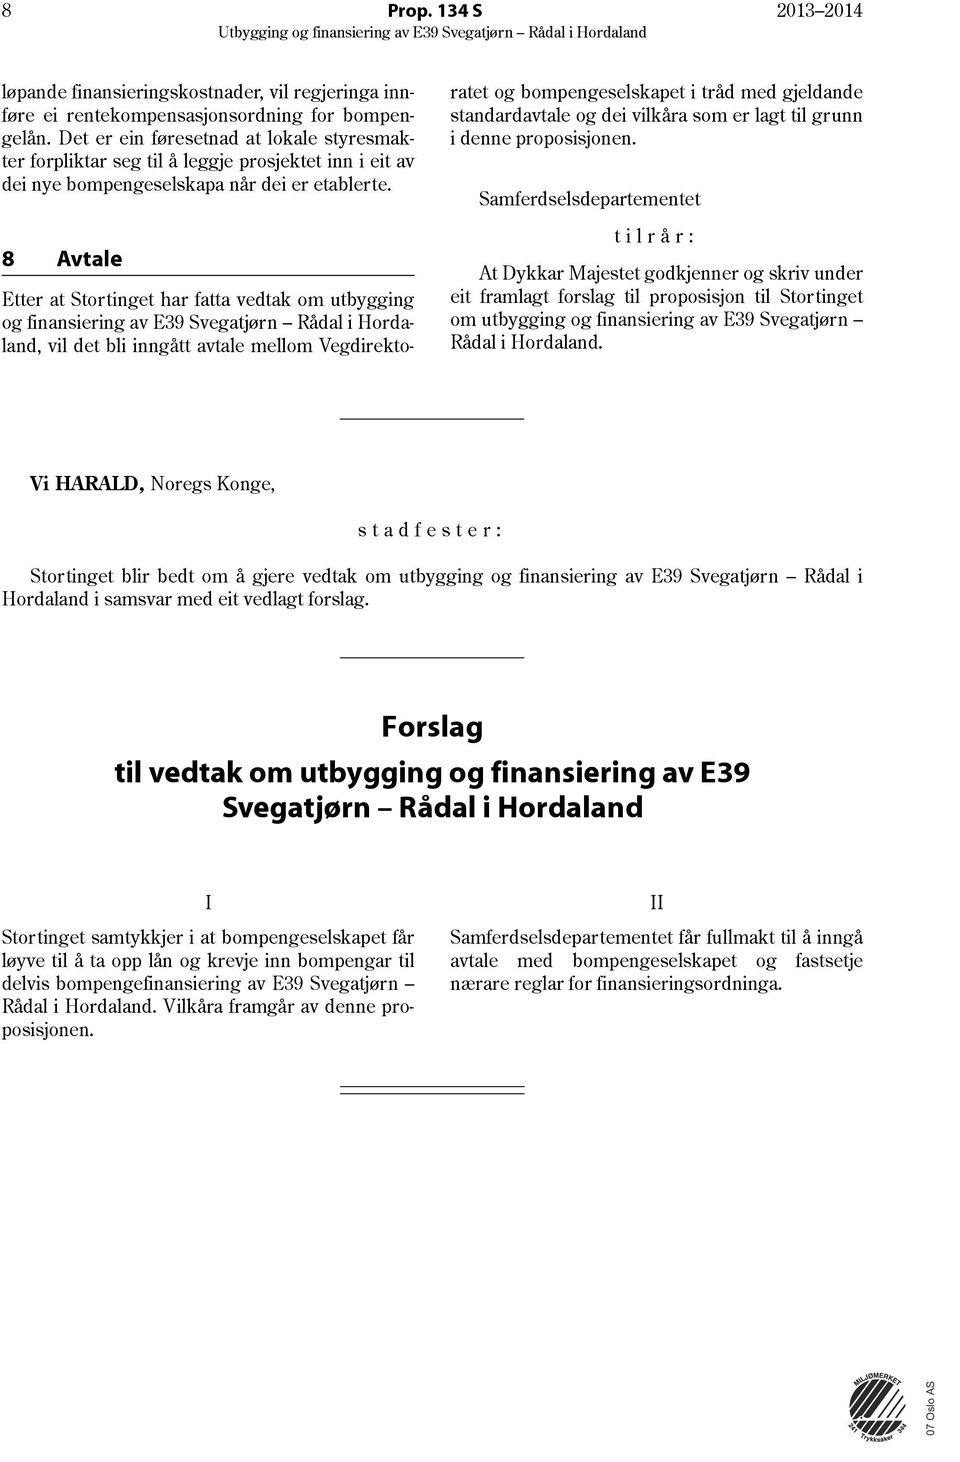 8 Avtale Etter at Stortinget har fatta vedtak om utbygging og finansiering av E39 Svegatjørn Rådal i Hordaland, vil det bli inngått avtale mellom Vegdirektoratet og bompengeselskapet i tråd med